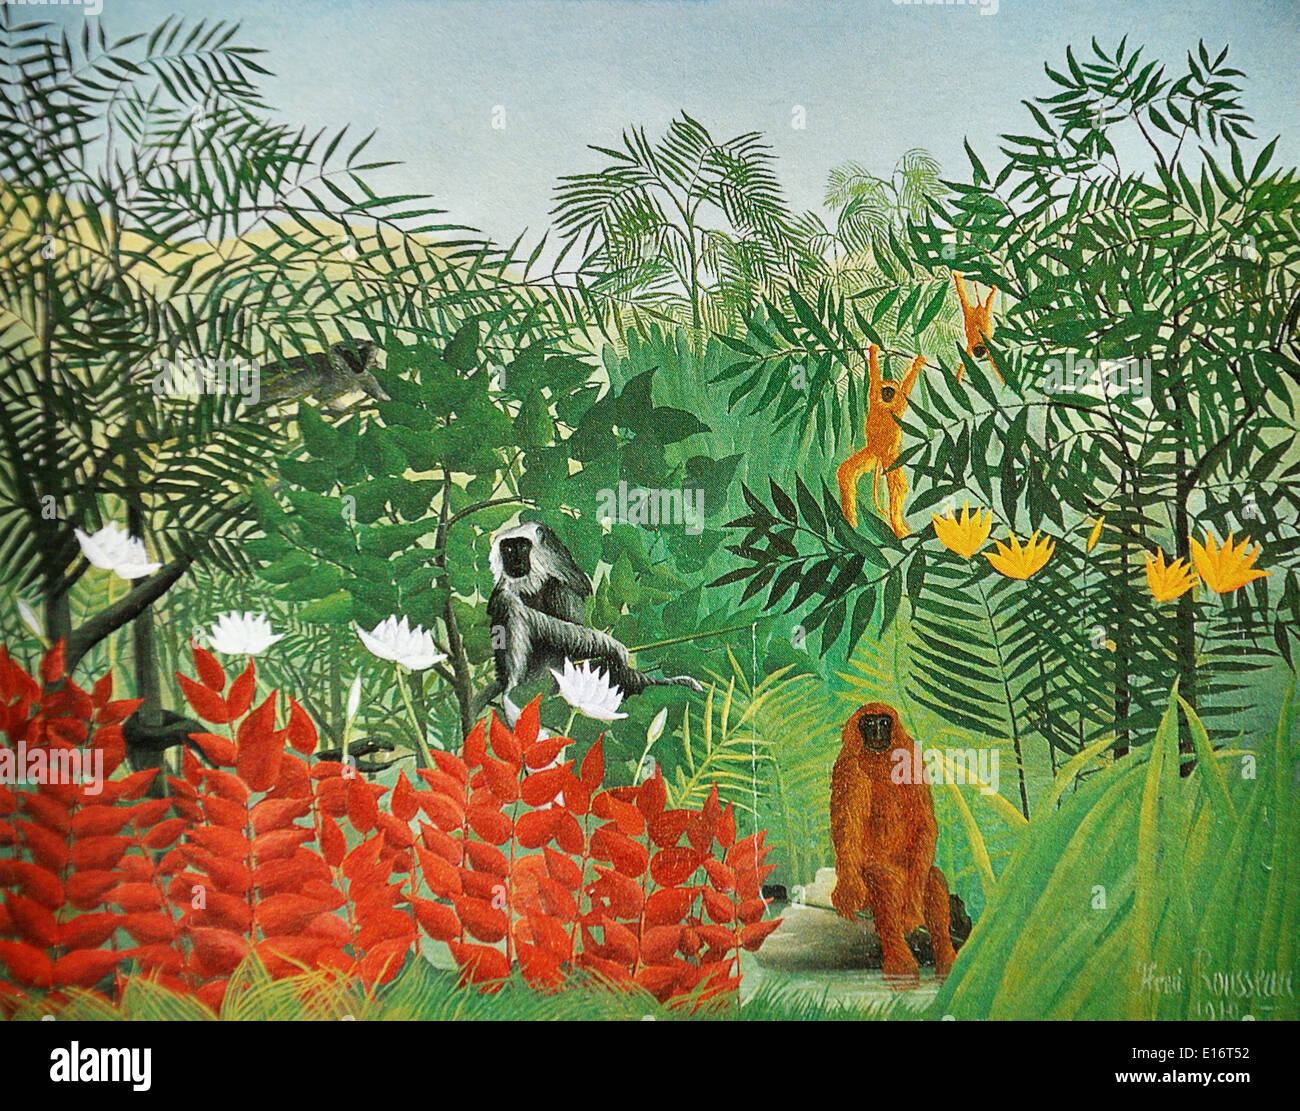 Forêt tropicale avec des singes par Henri Rousseau, 1910 Banque D'Images